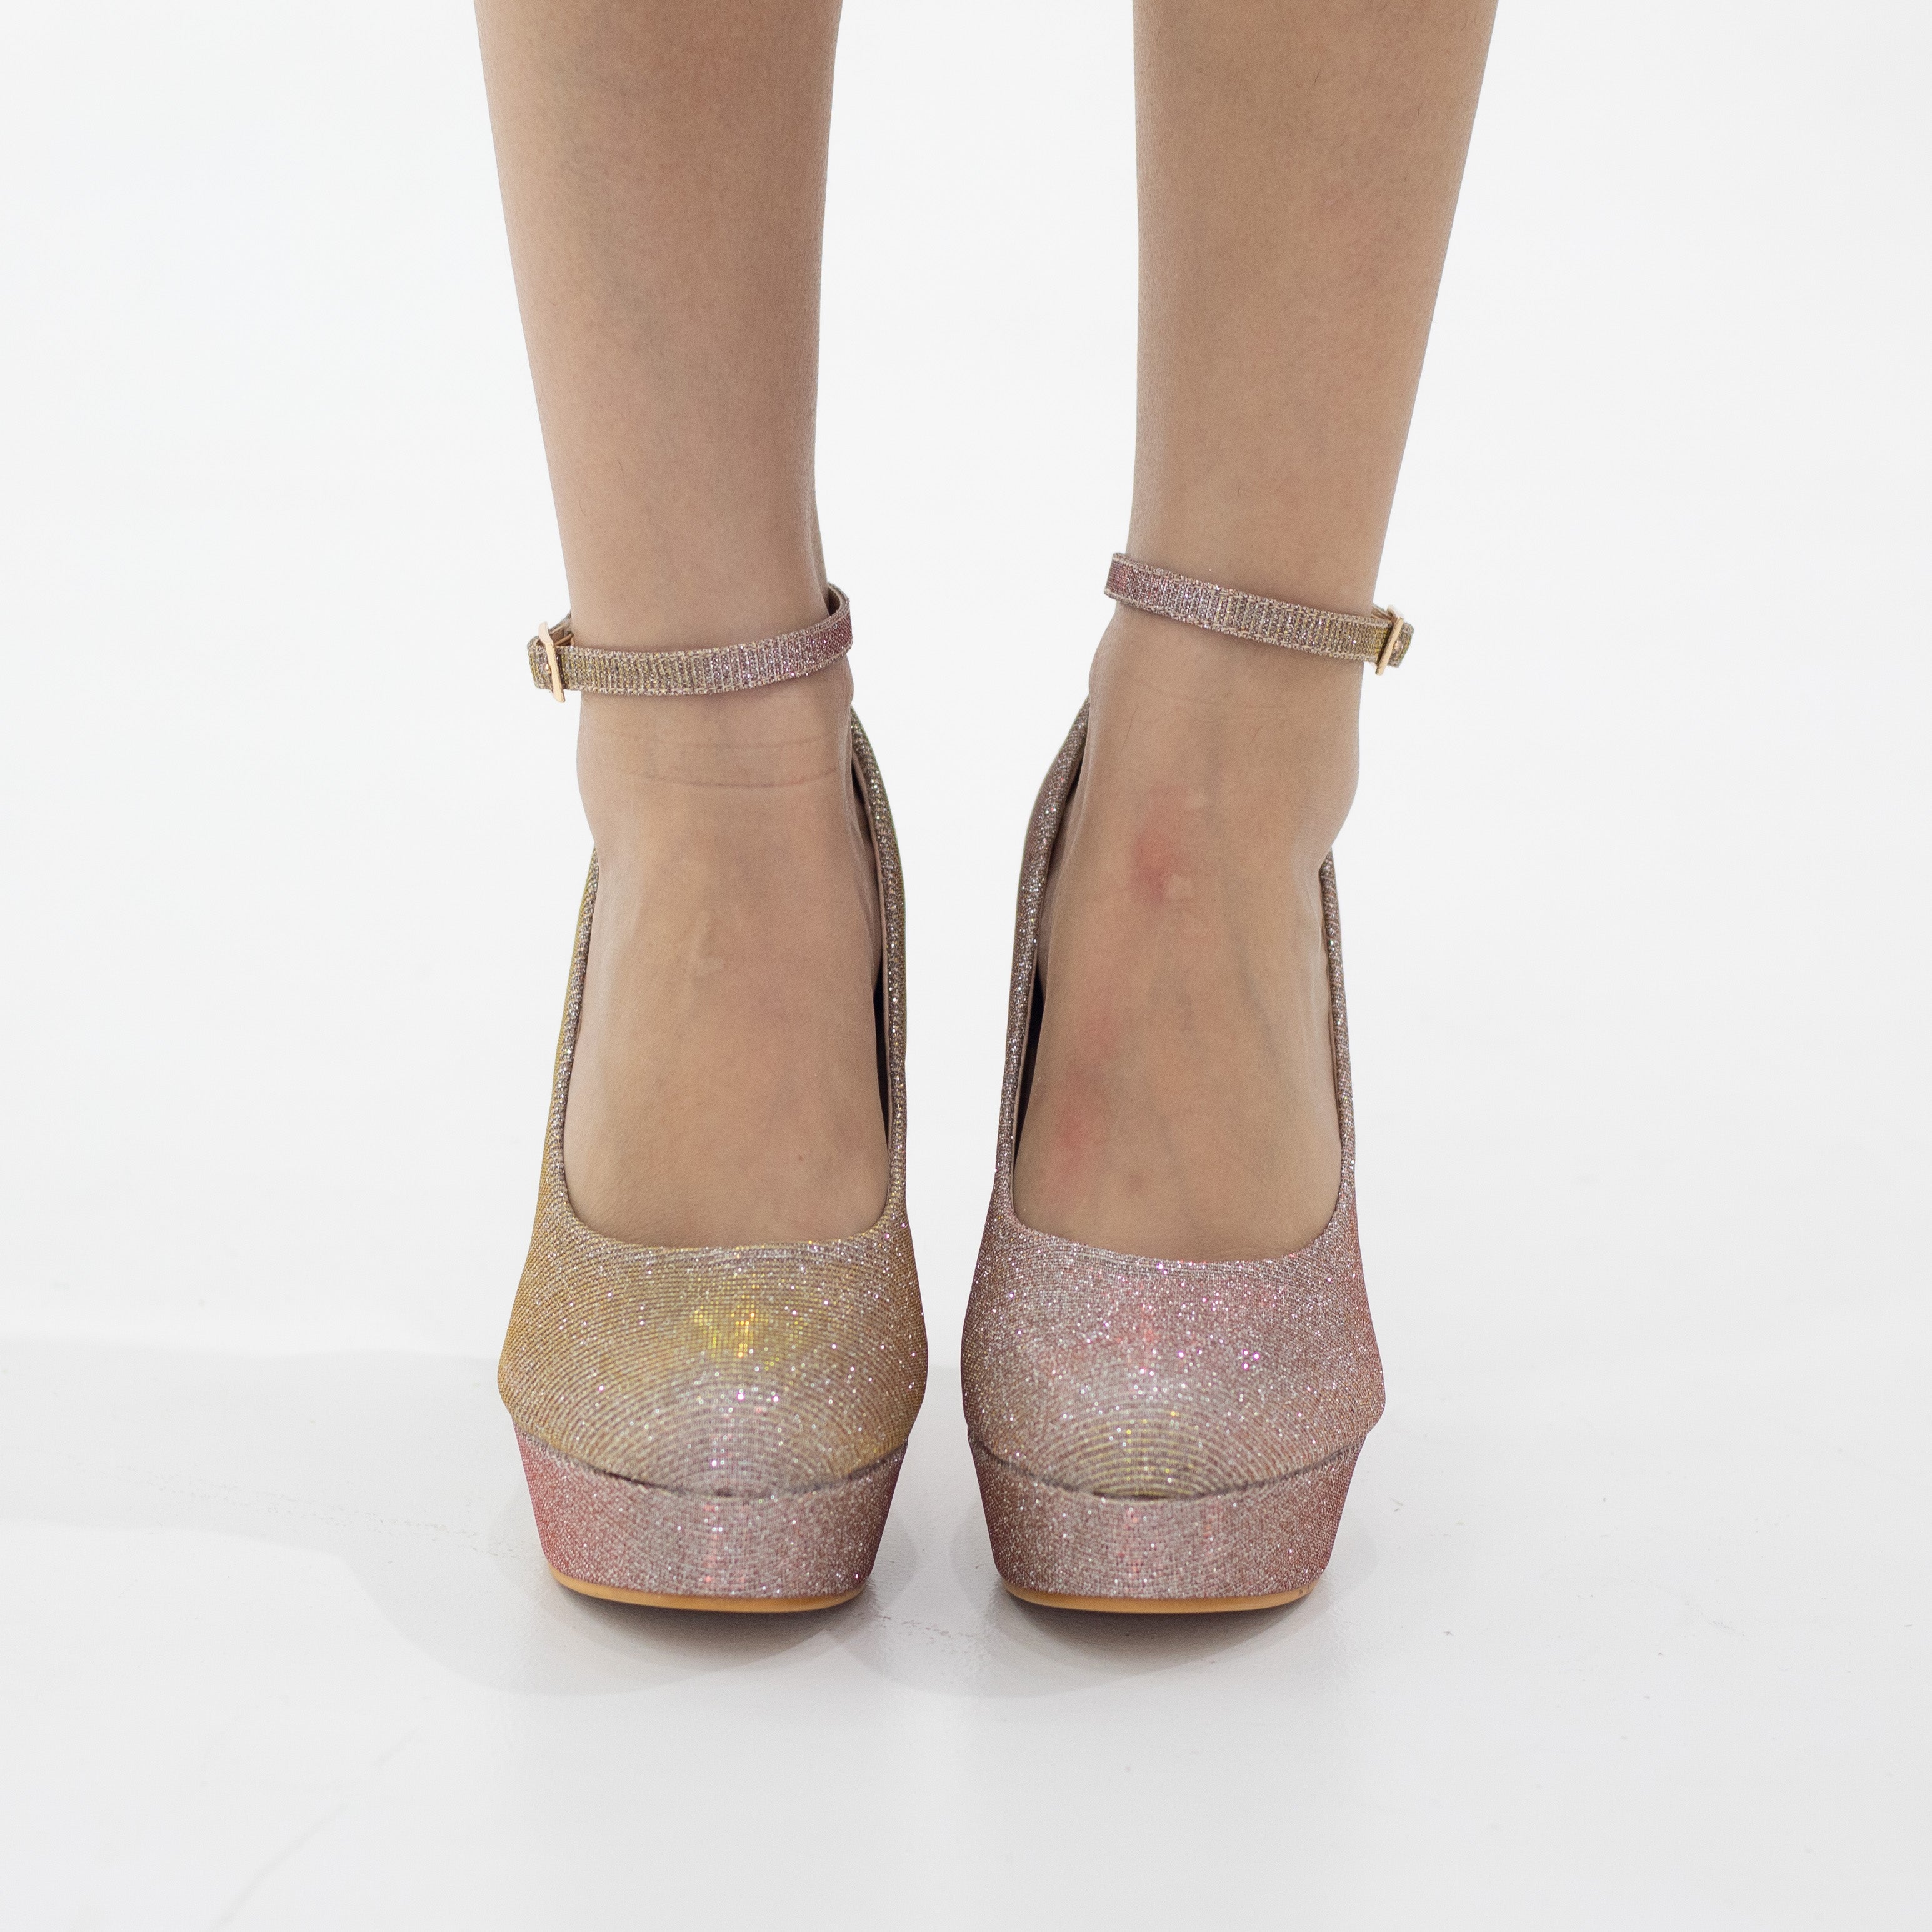 Rose gold ankle strap platform courts shimmer 12cm heel irana